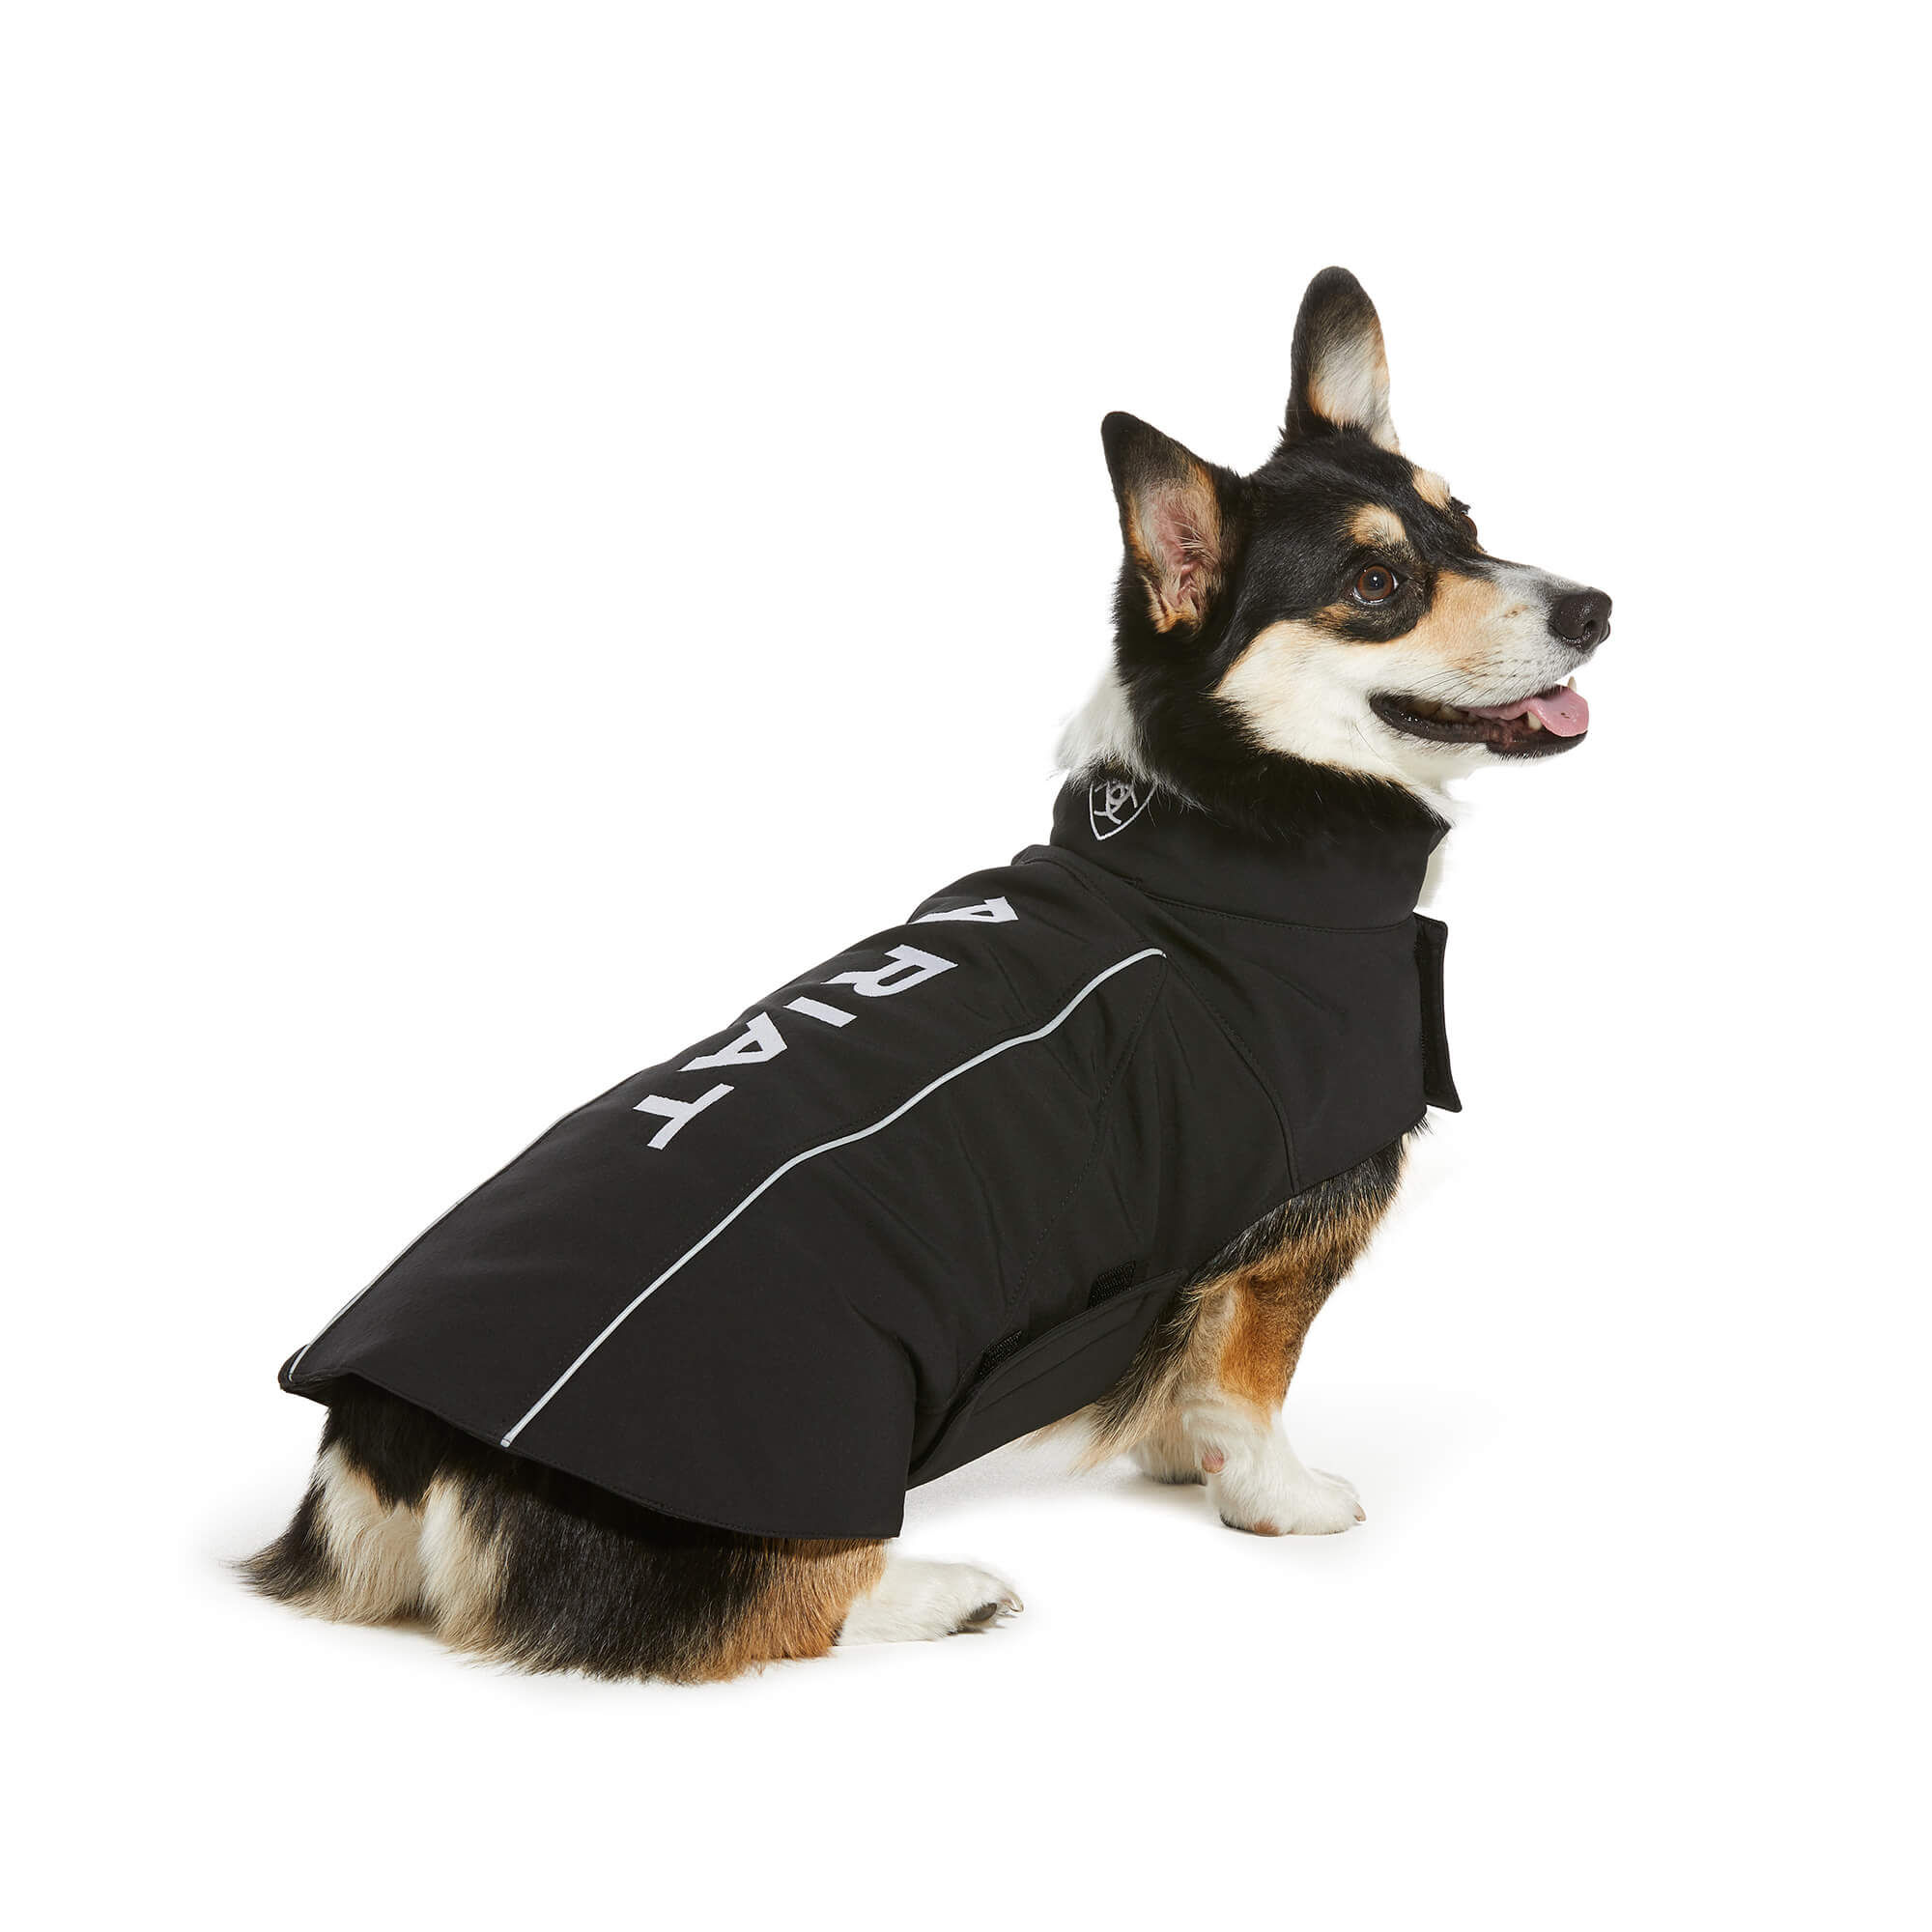 dog with jacket